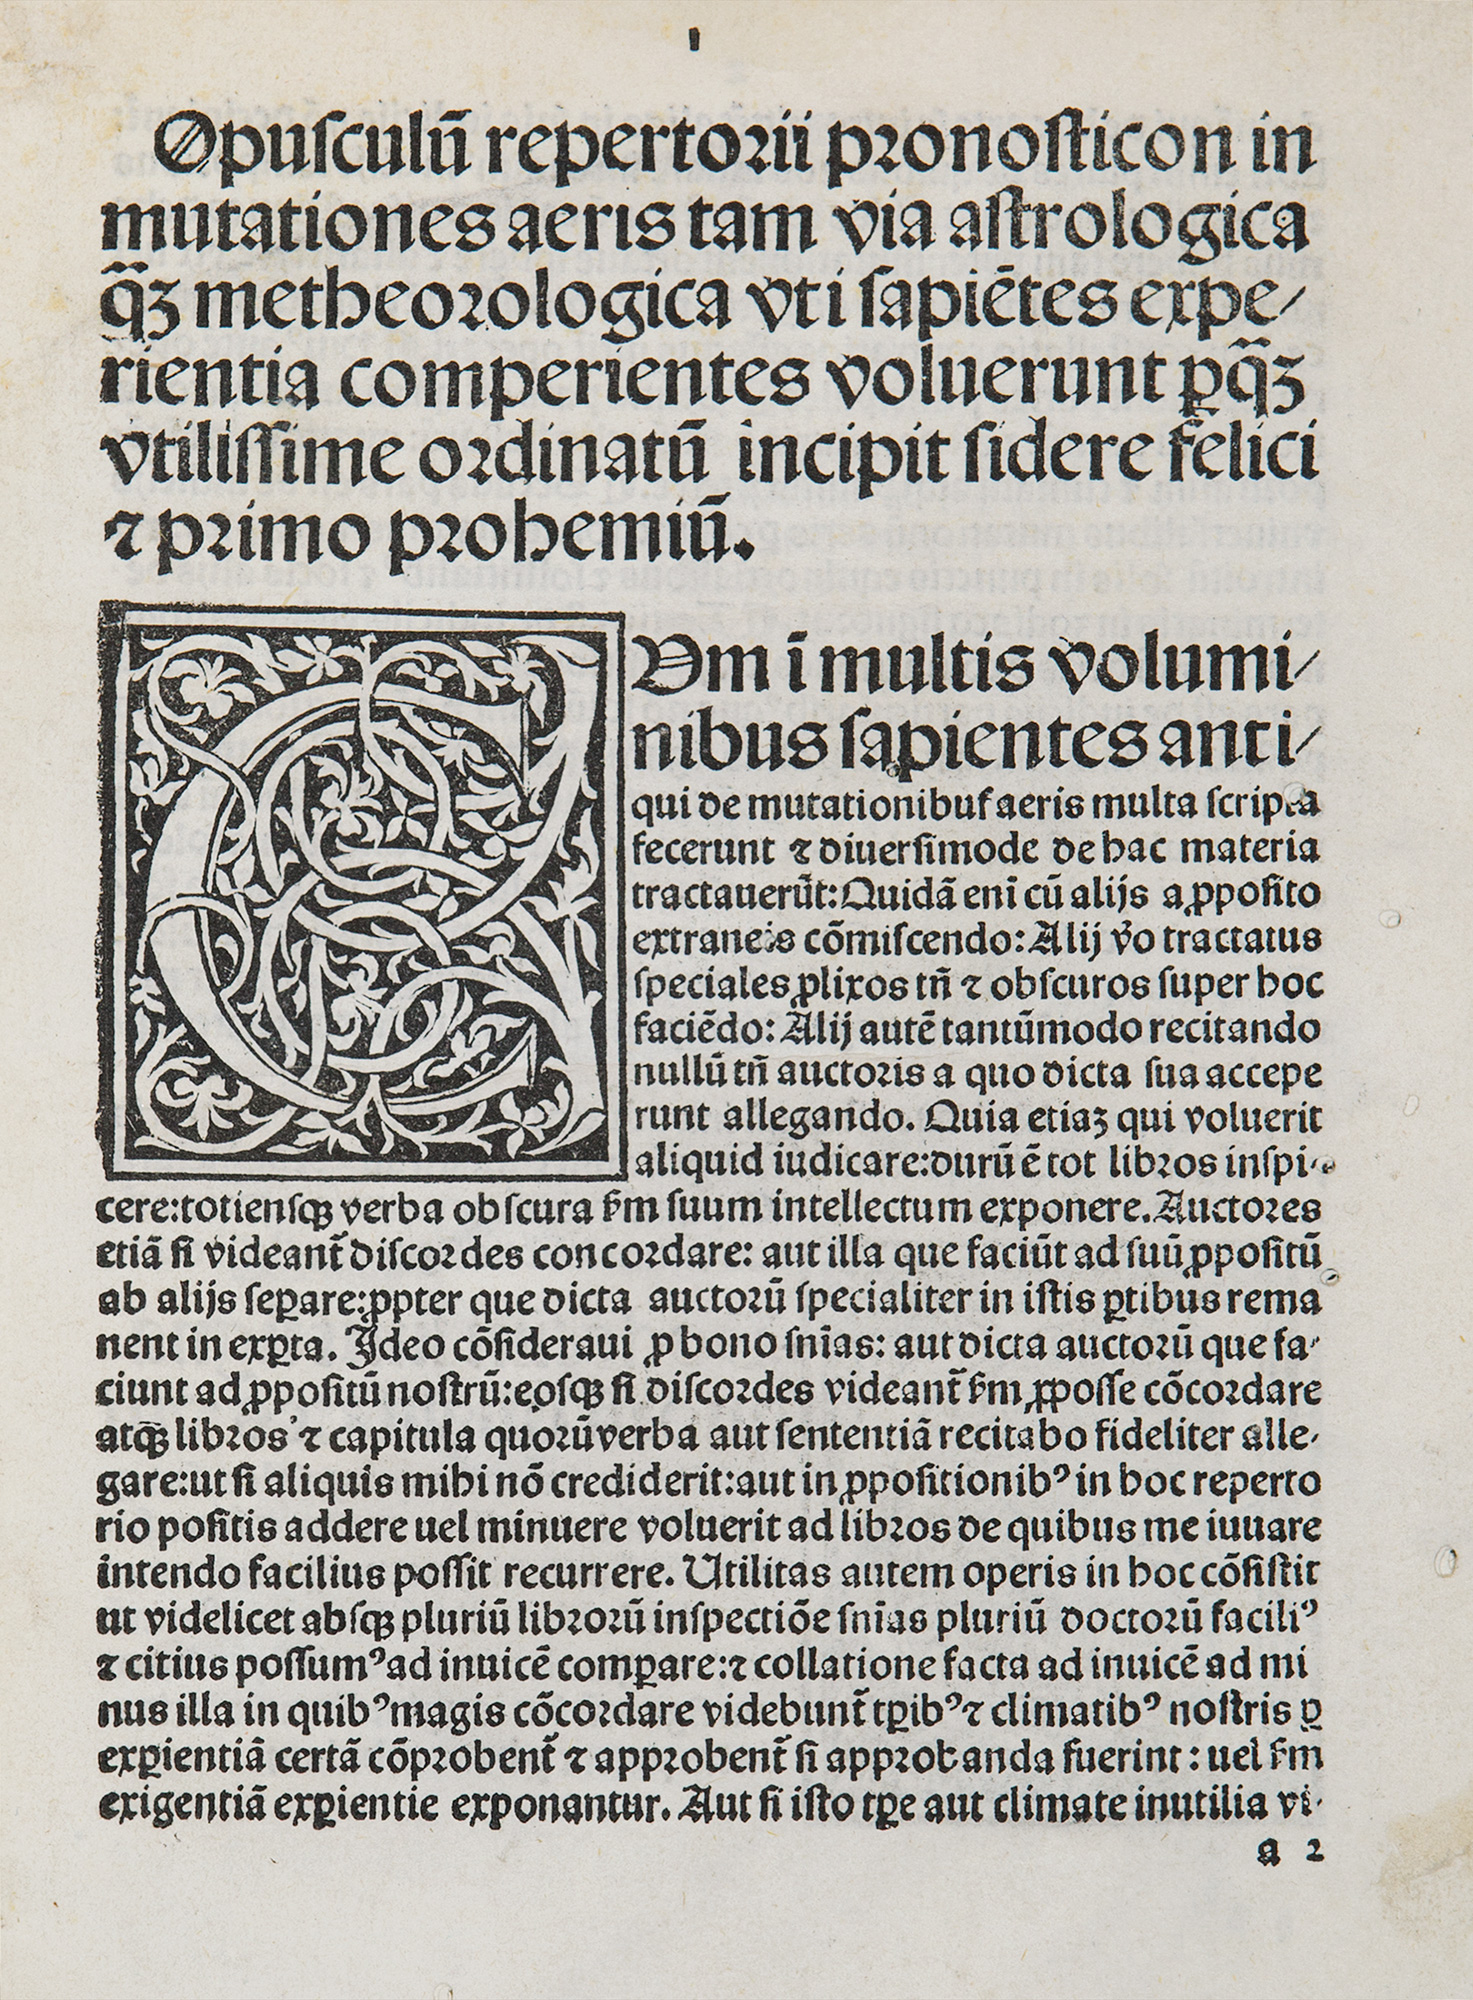 Opusculum repertorii prognosticon in mutationes aeris. Pseudo- Hippocrates: Libellus de medicorum astrologia